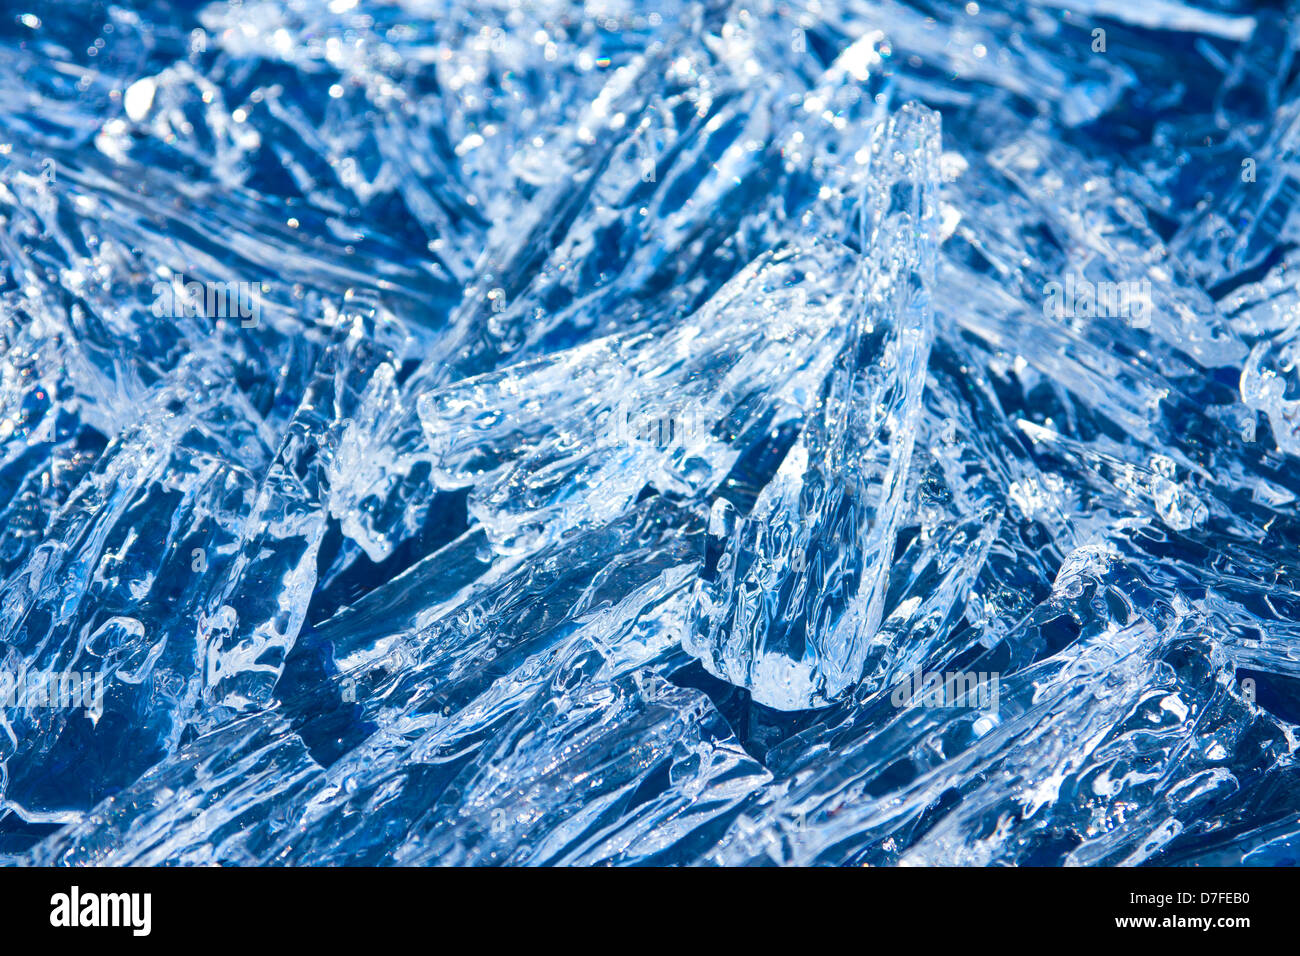 Des cristaux de glace (pièces) texture bleu étincelant close up, hiver noël arrière-plan horizontal. Banque D'Images